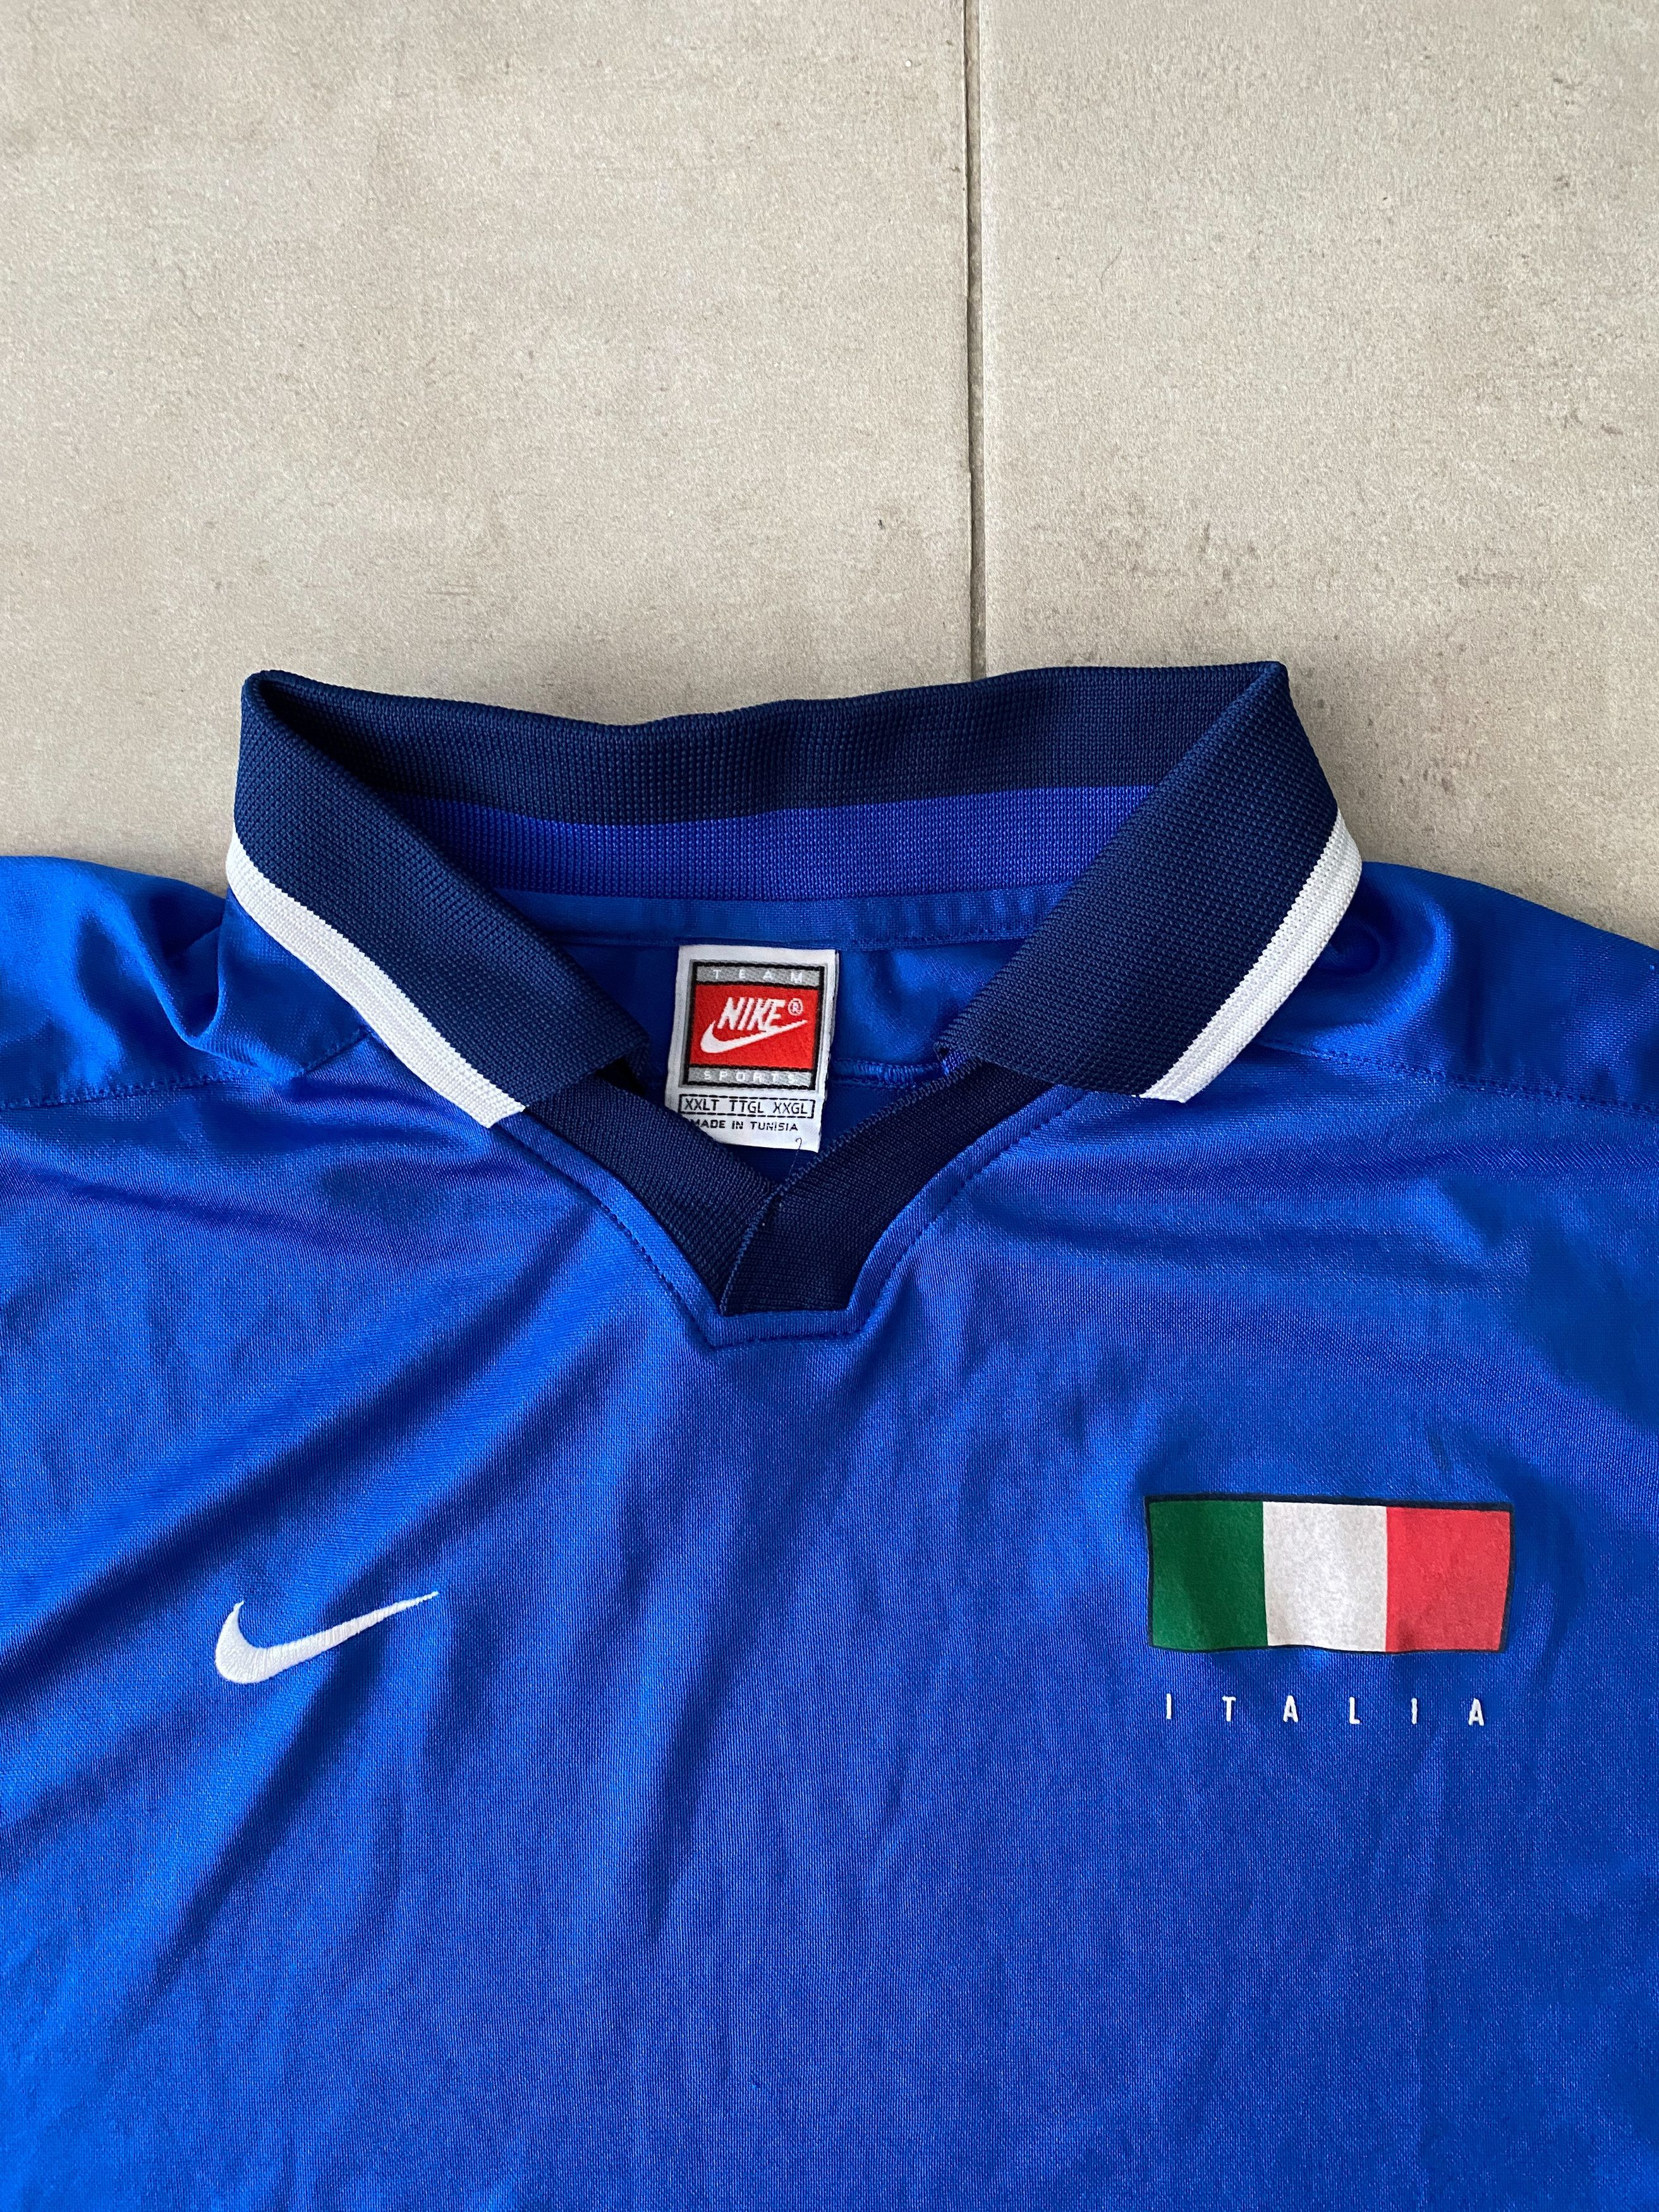 Nike Nike vintage Italy 90s jersey Size US XXL / EU 58 / 5 - 3 Thumbnail